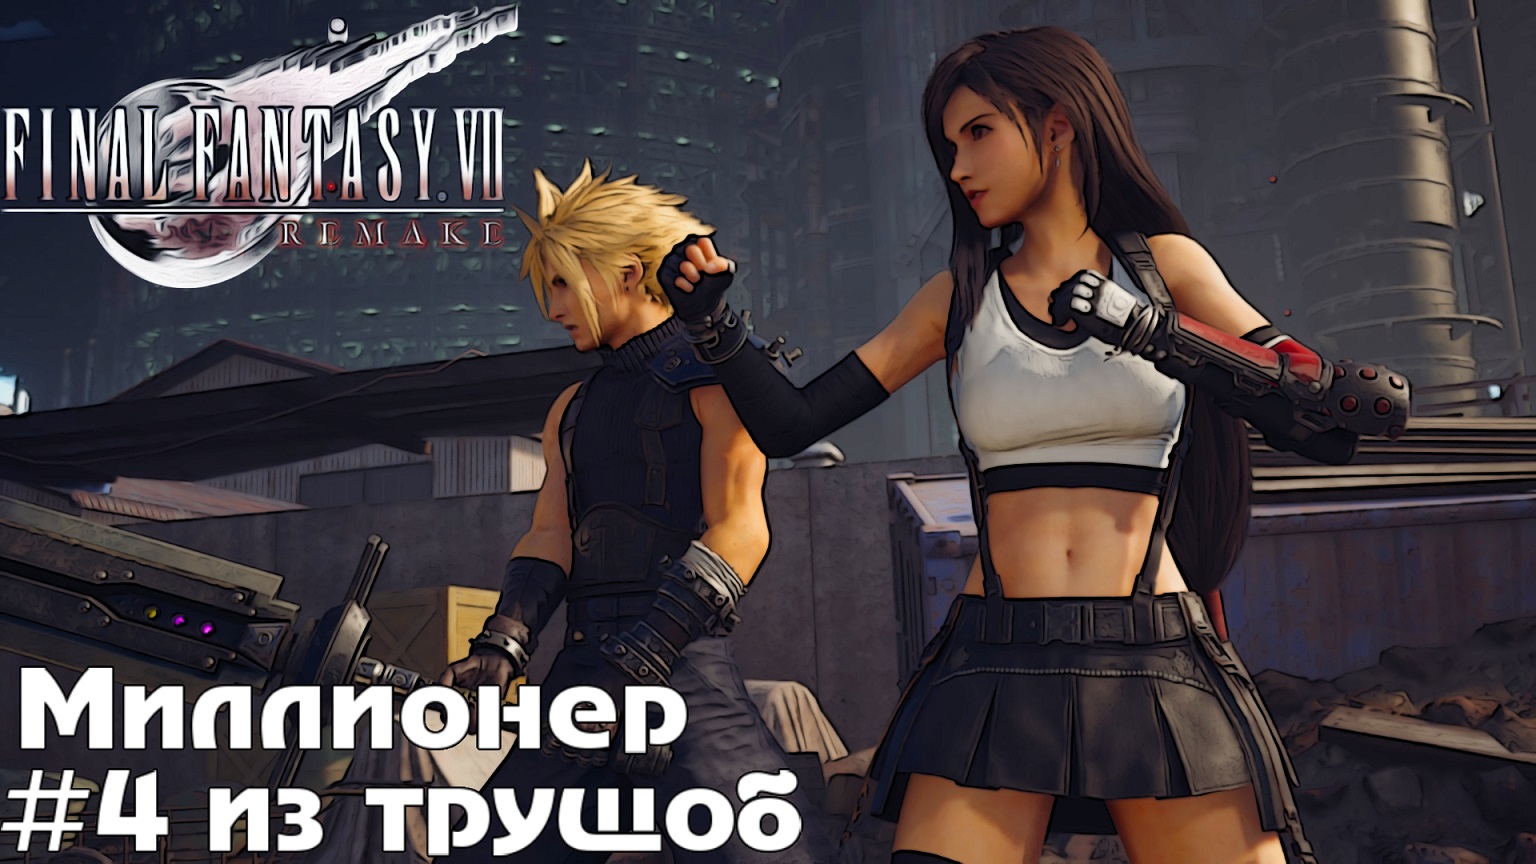 Миллионер из трущоб Final Fantasy VII Remake прохождение на русском часть 4 #finalfantasy